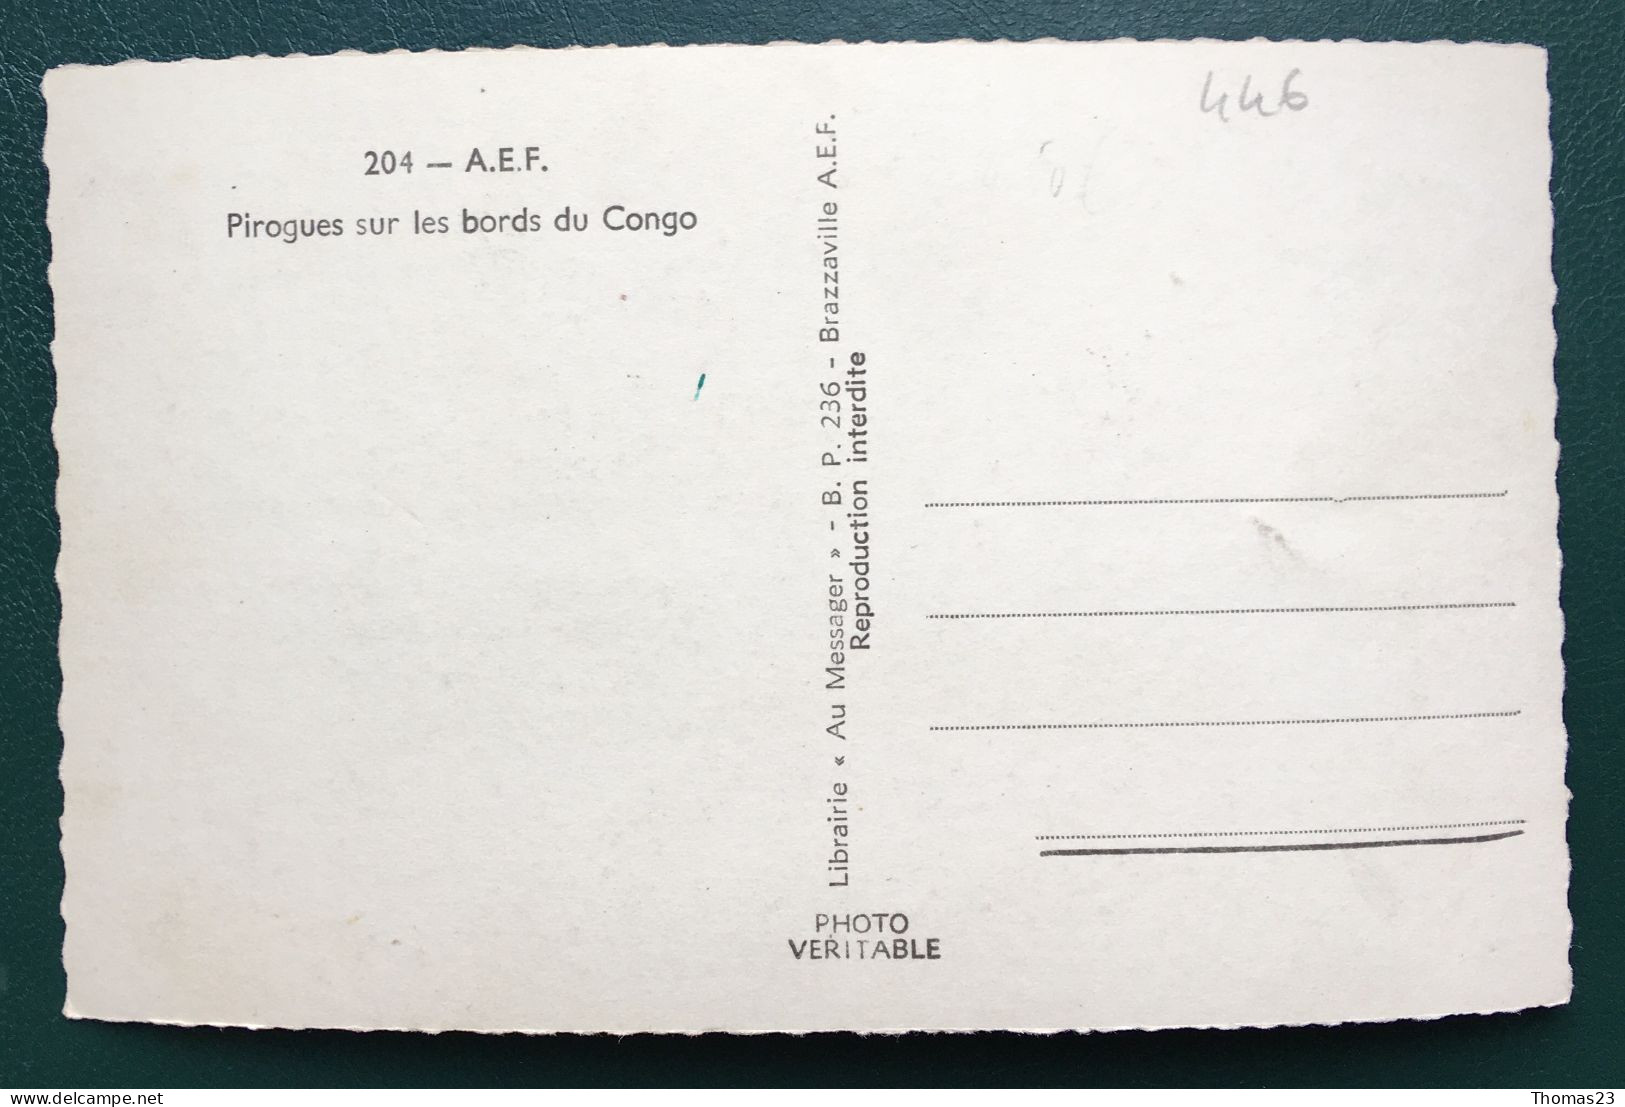 Pirogues Sur Les Bords Du Congo, Lib "Au Messager", N° 204 - Brazzaville